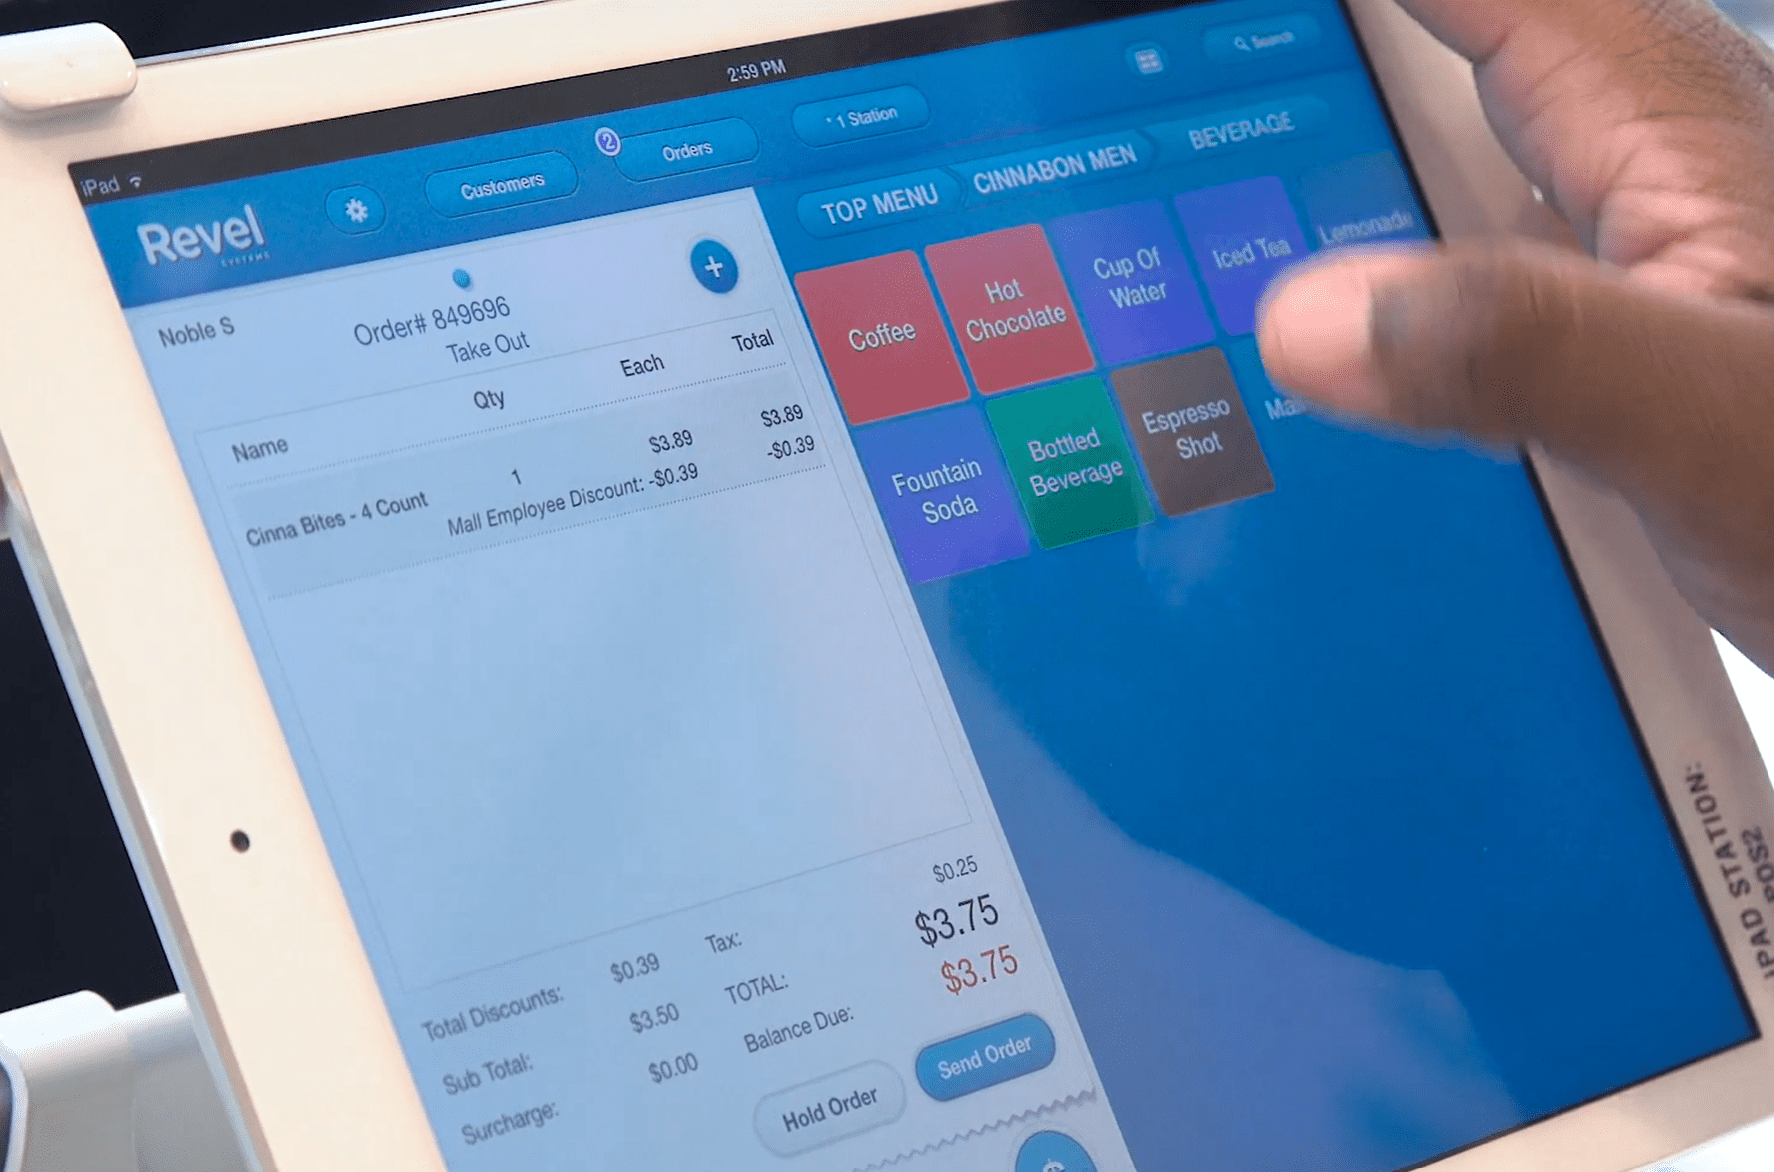 Revel tablet POS ordering system for restaurants